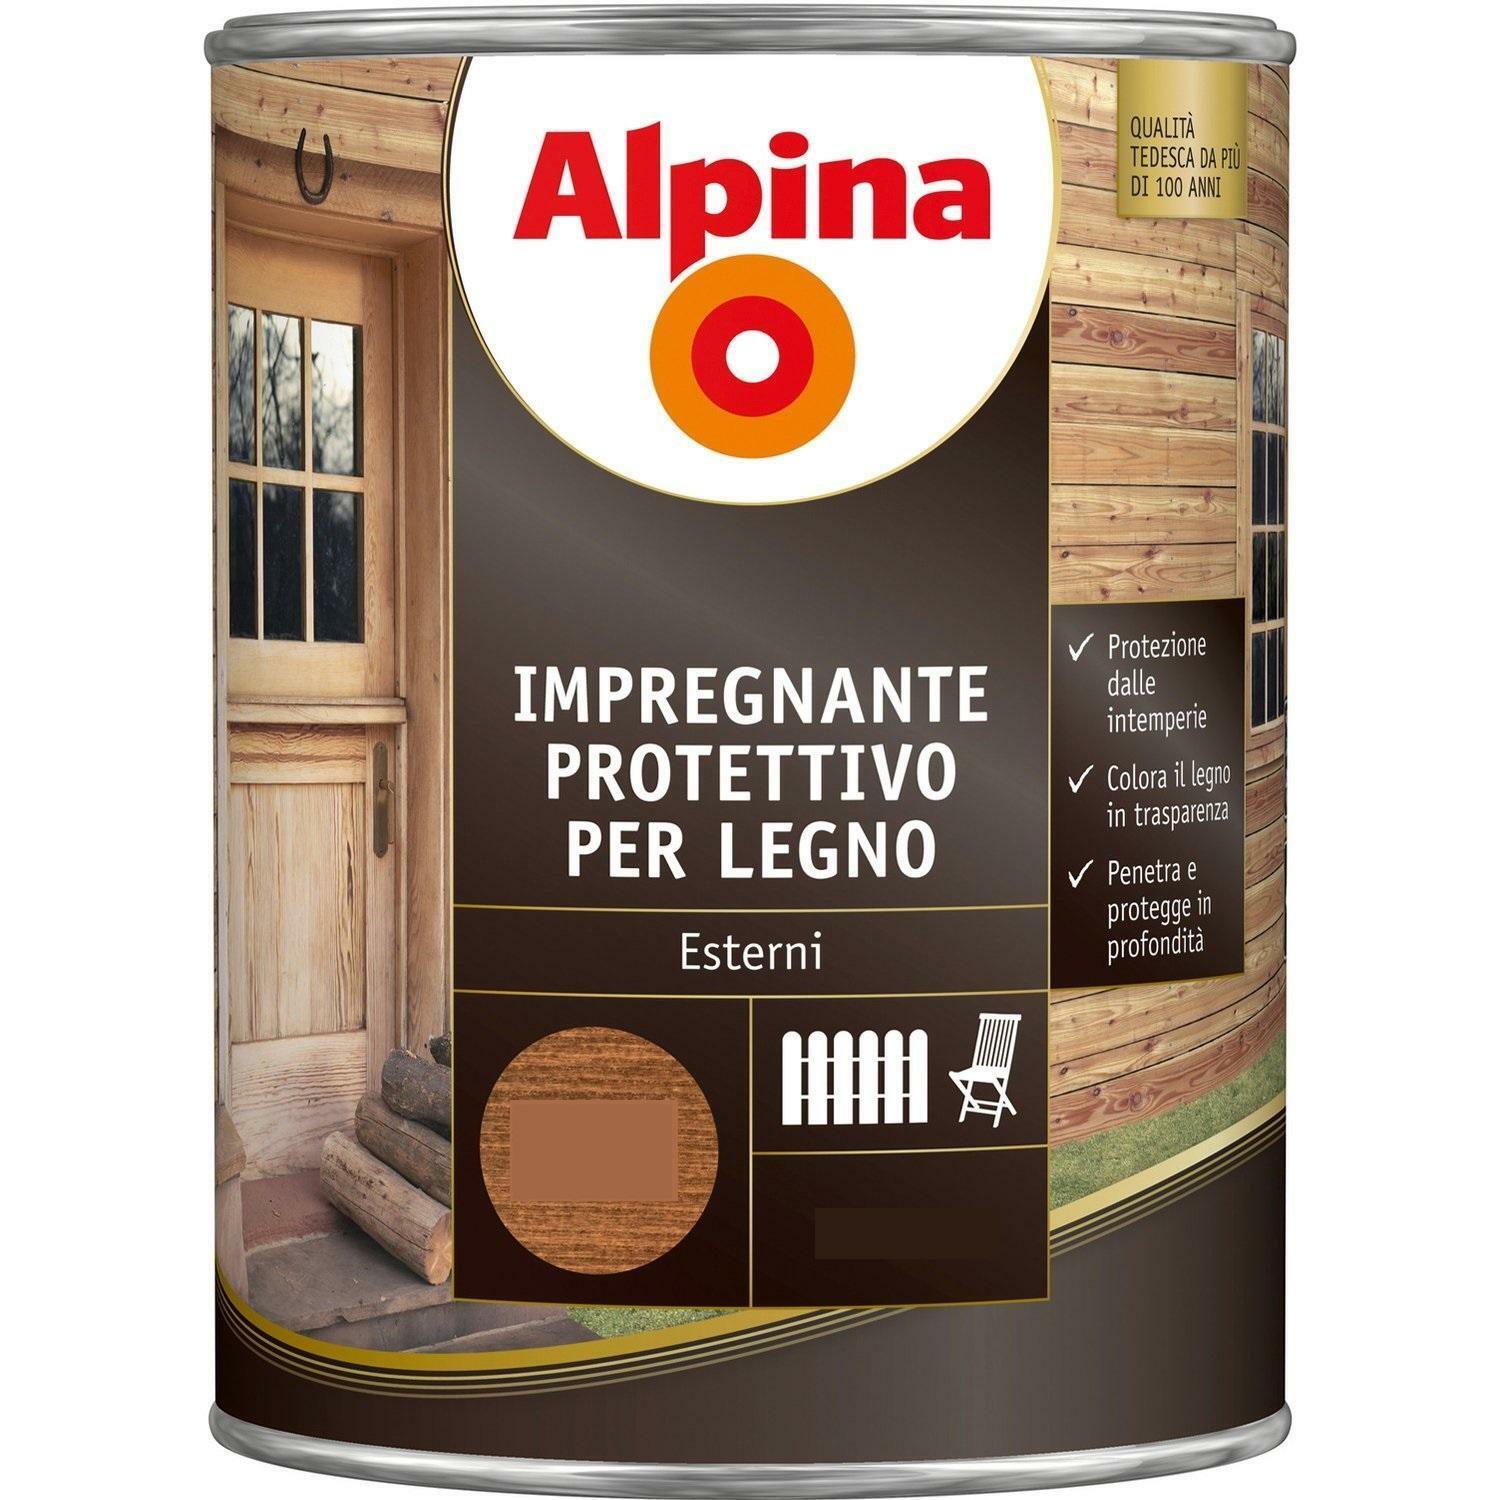 alpina alpina impregnante protettivo per legno incolore 2,5 litri